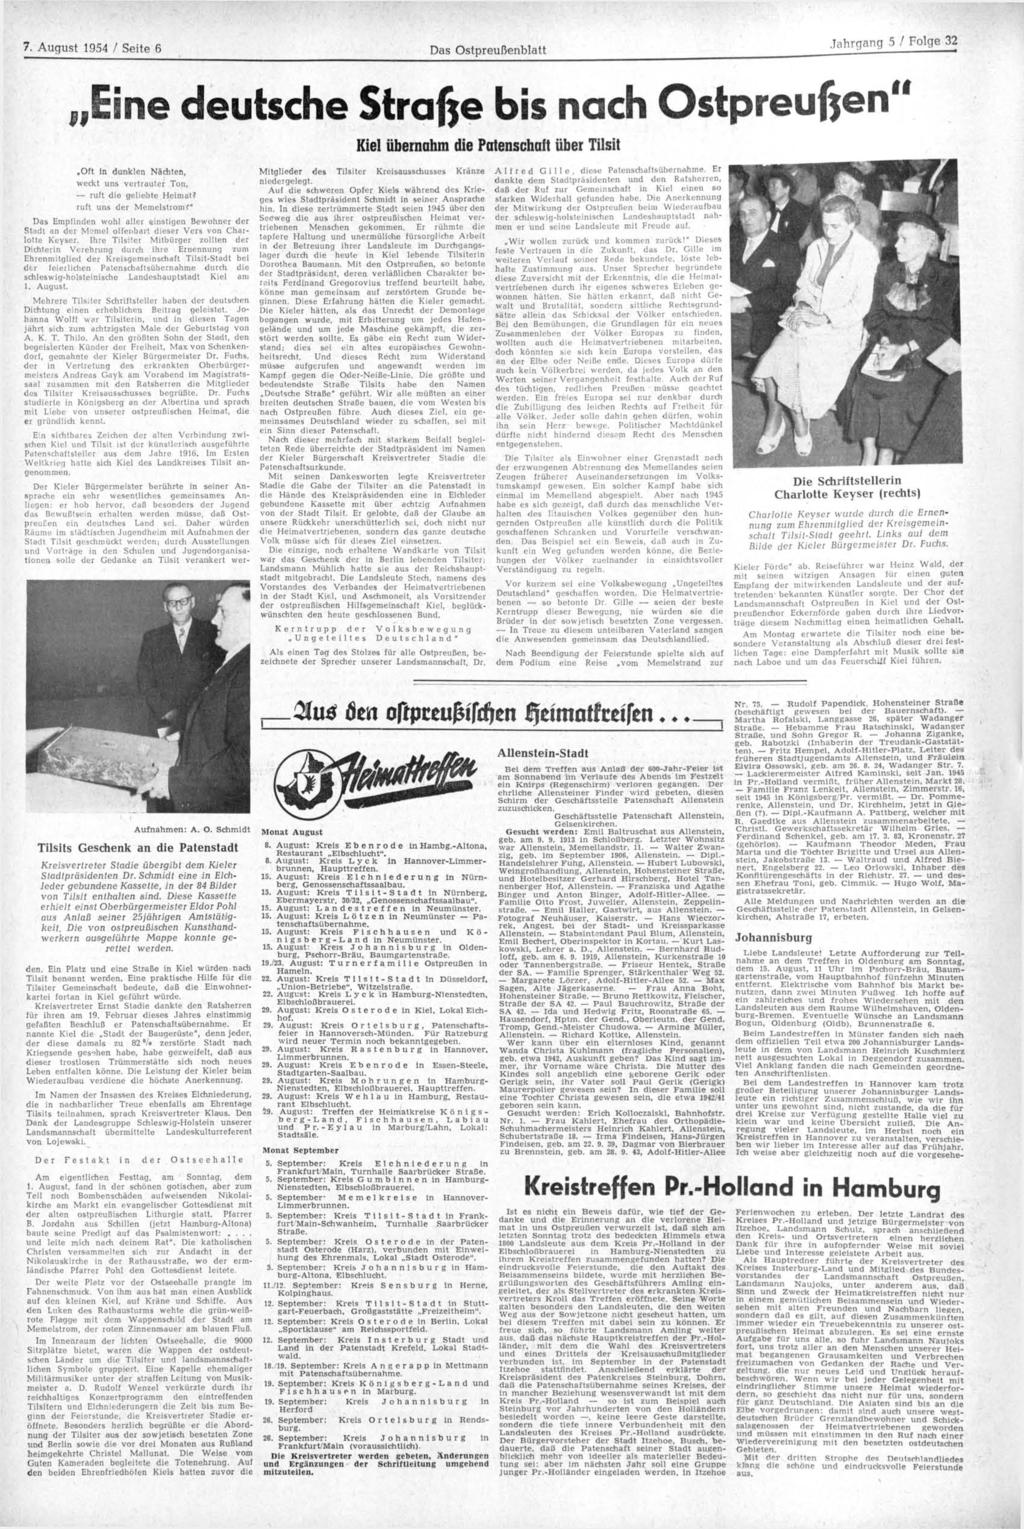 7. August 1954 / Seite 6 Das Ostpreußenblatt Jahrgang 5 / Folge 32 Eine deutsche Strafte bis nach Ostpreußen" Kiel übernahm die Patenschaft über Tilsit Oft in dunklen Nächten, weckt uns vertrauter